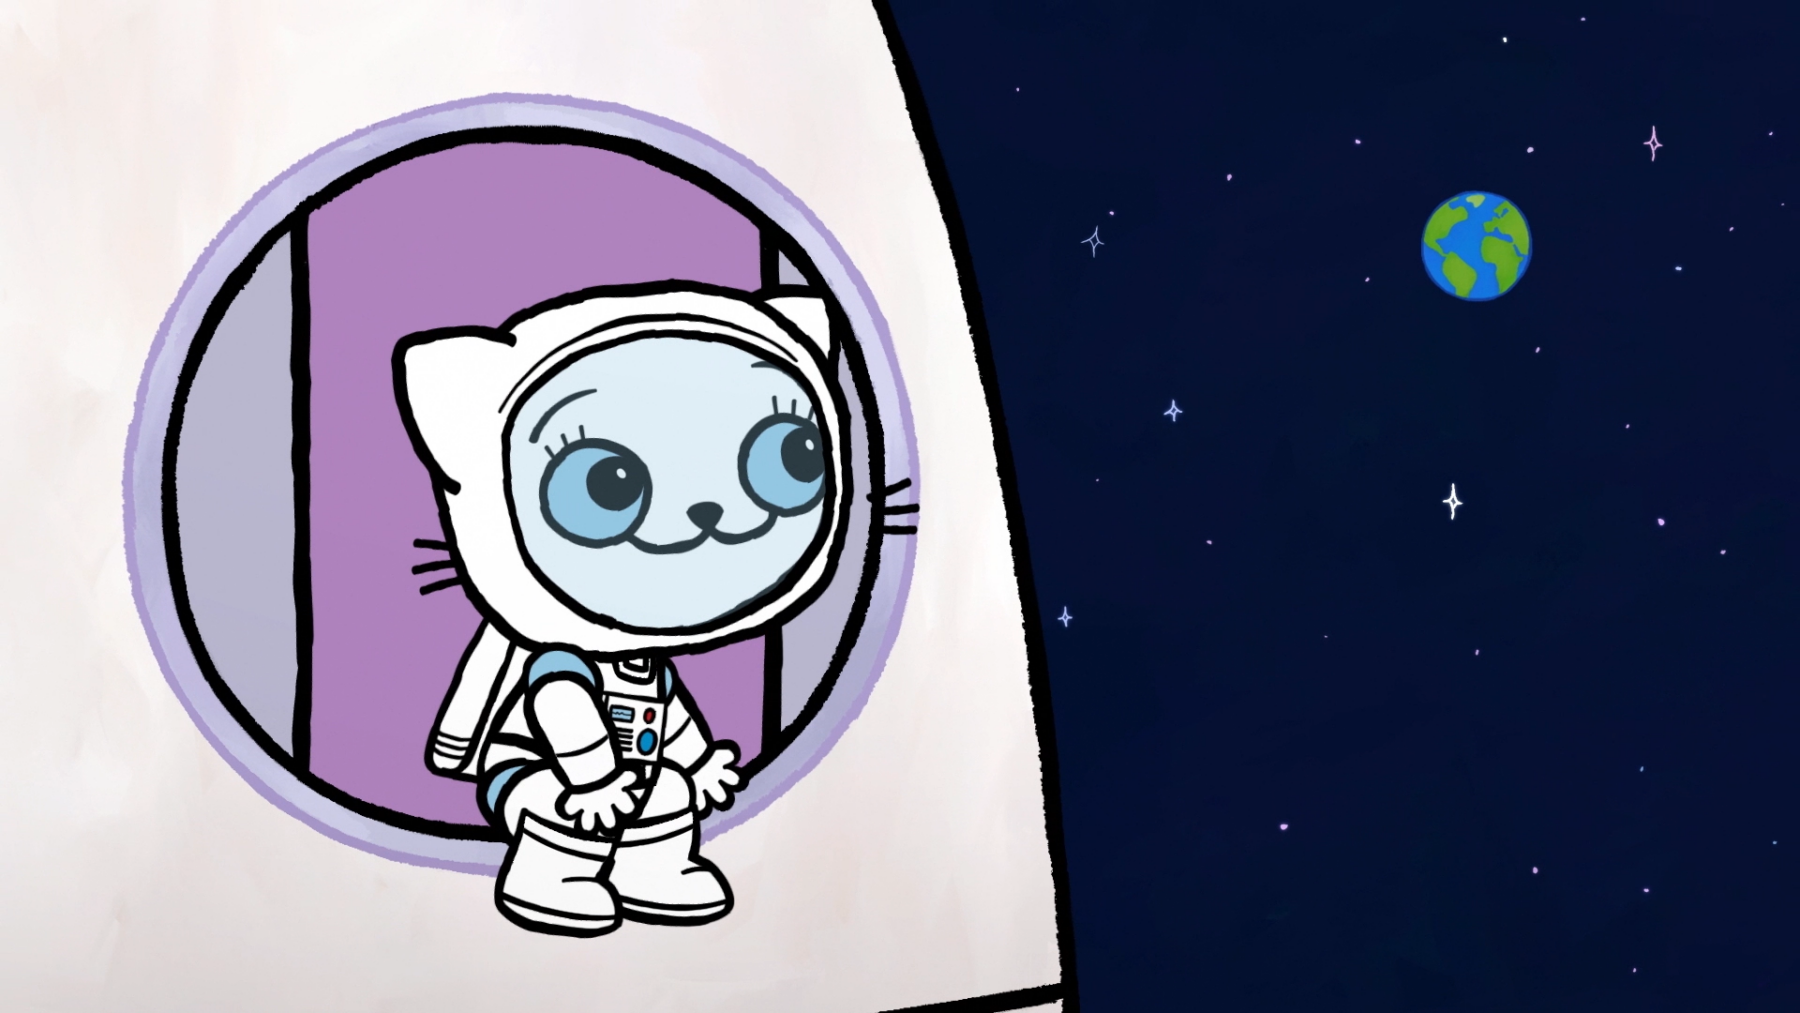 Kadr z bajki, biały kotek w stroju astronauty siedzi na rakiecie i patrzy na przestrzeń kosmiczną.